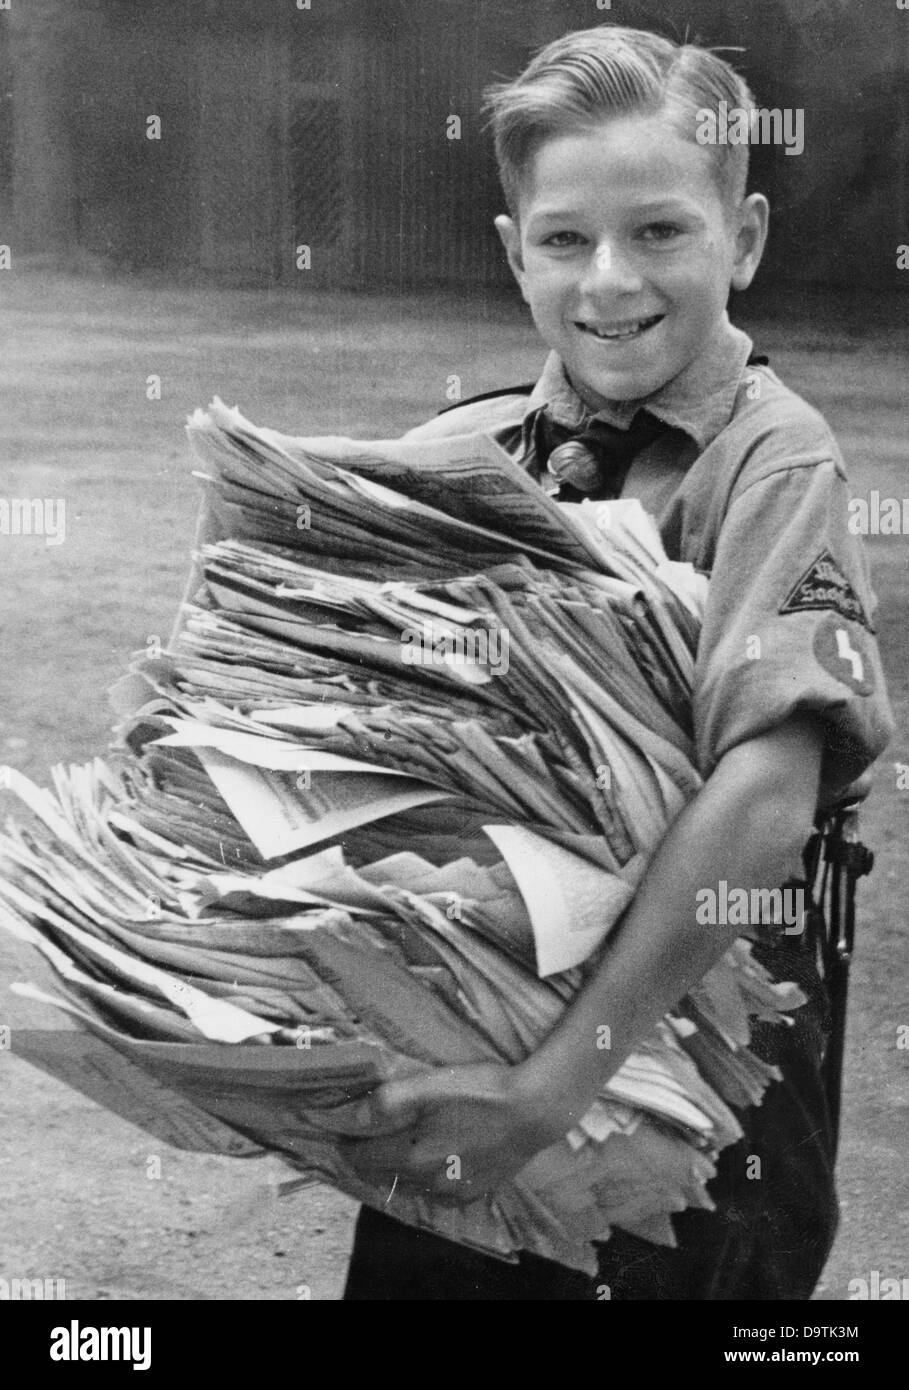 Un garçon, portant l'uniforme de la Jeunesse allemande, a recueilli de vieux journaux et les porte au point de collecte de papier de rebut, en août 1942. Fotoarchiv für Zeitgeschichte Banque D'Images